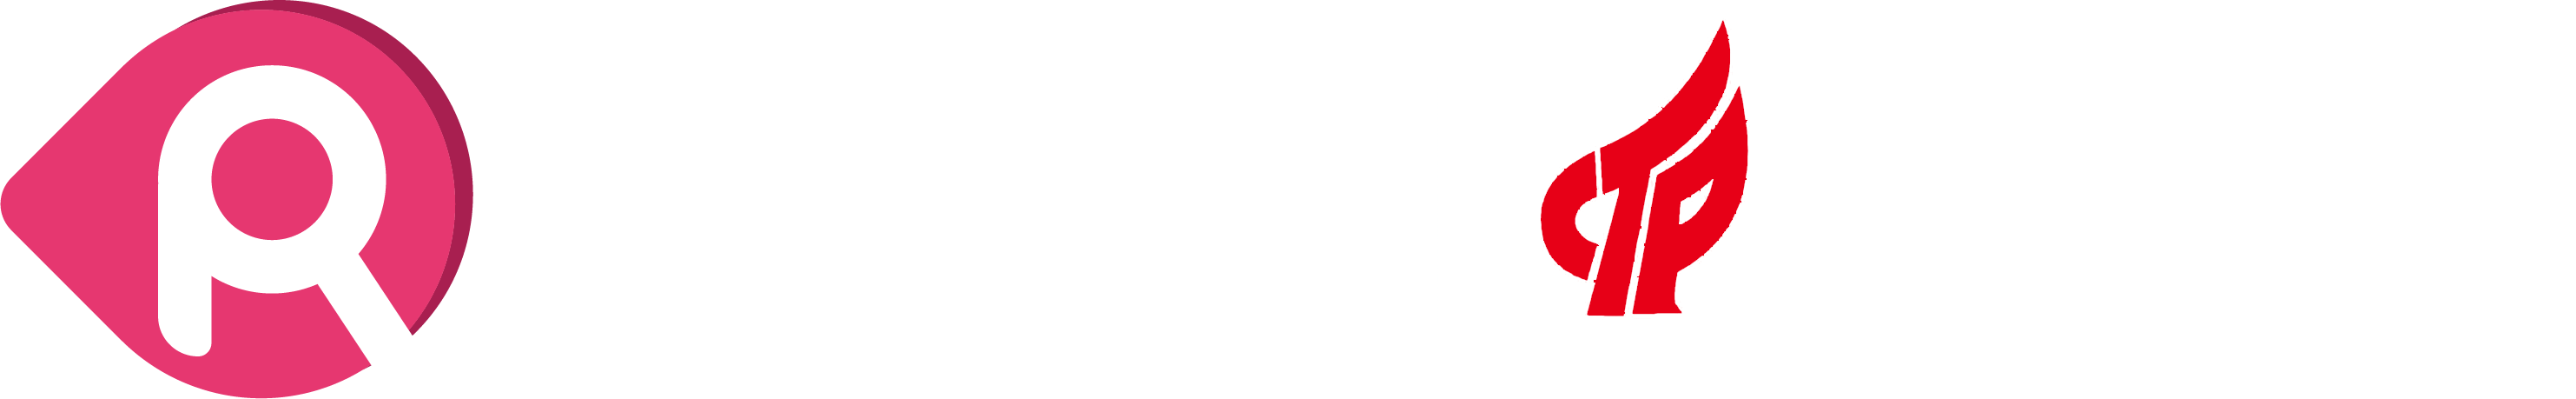 上海令容網絡科技有限公司